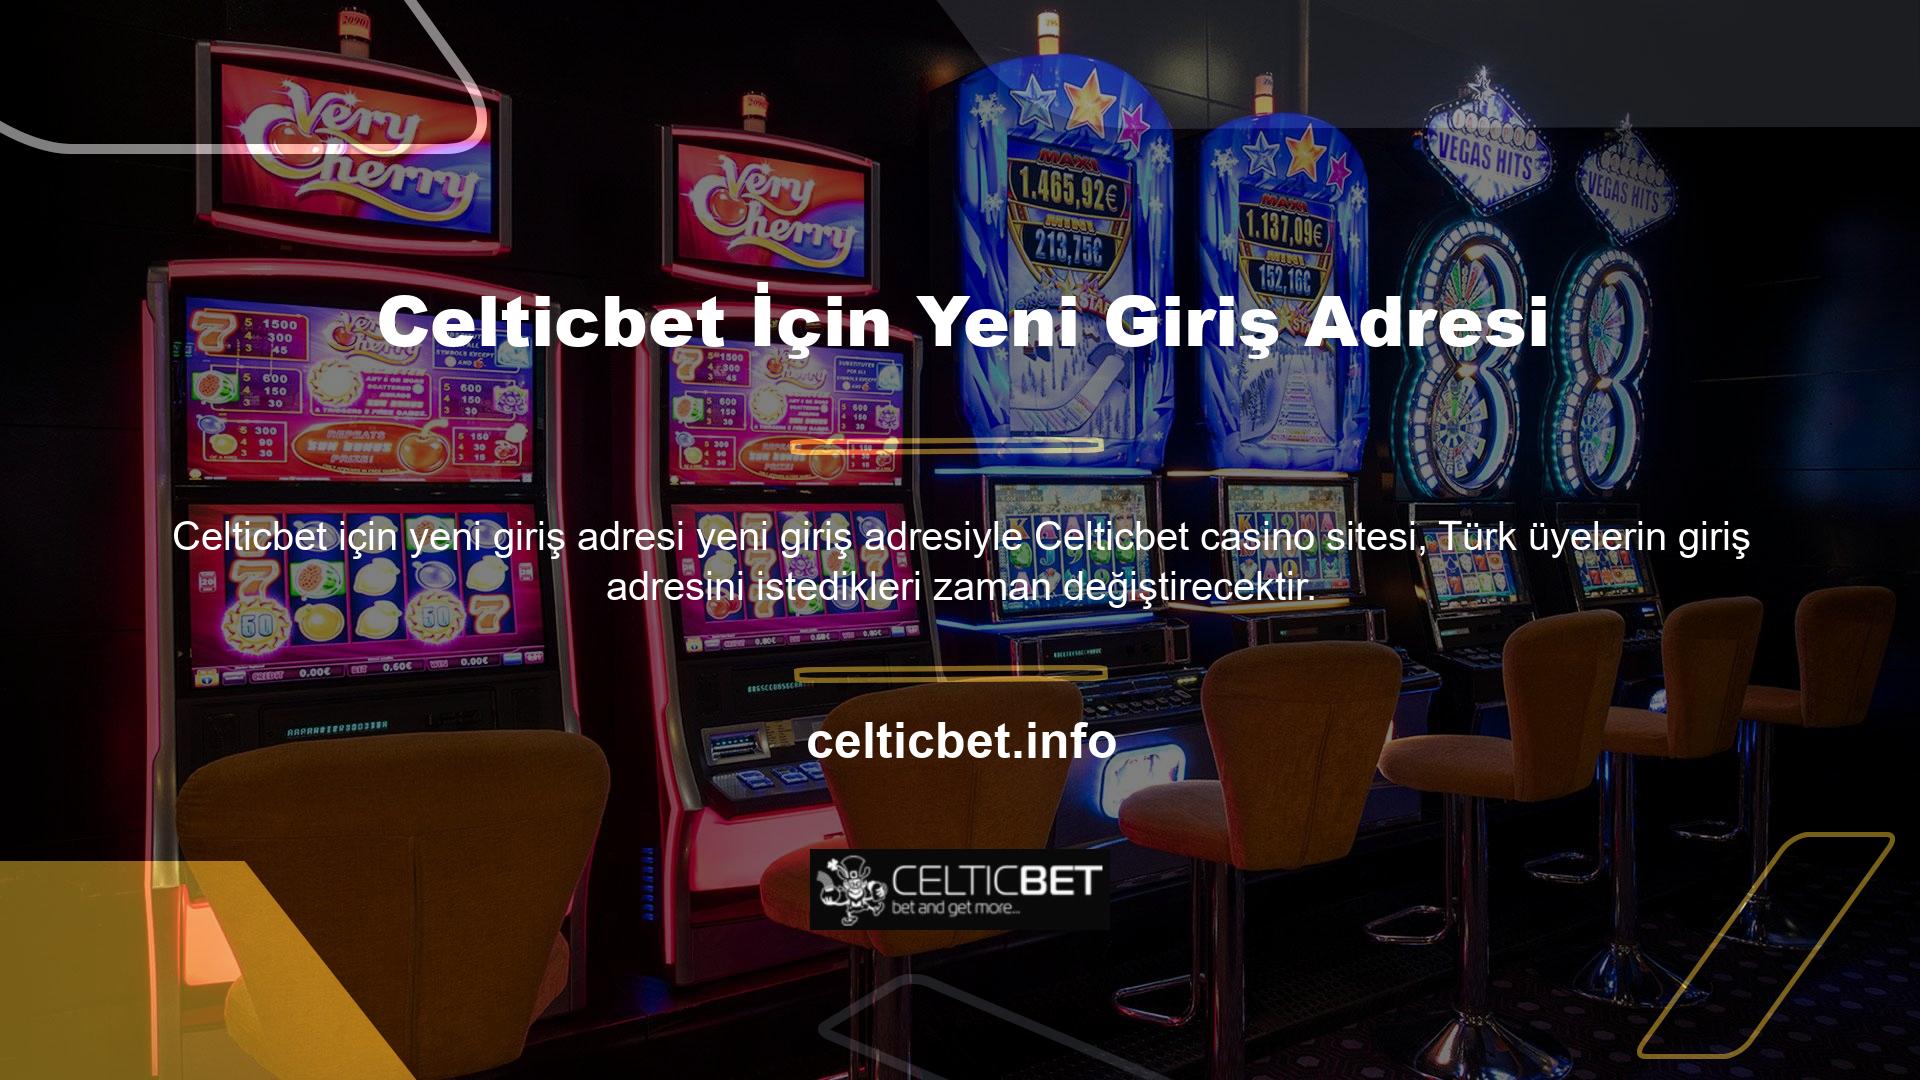 Celticbet giriş adresinize erişen herkes, sitenin para yatırma bölümünde yer alan en güvenilir ödeme seçeneklerini kullanarak üye hesabınıza para yatırabilir, spor bahisleri ve casino oyunları oynayabilir